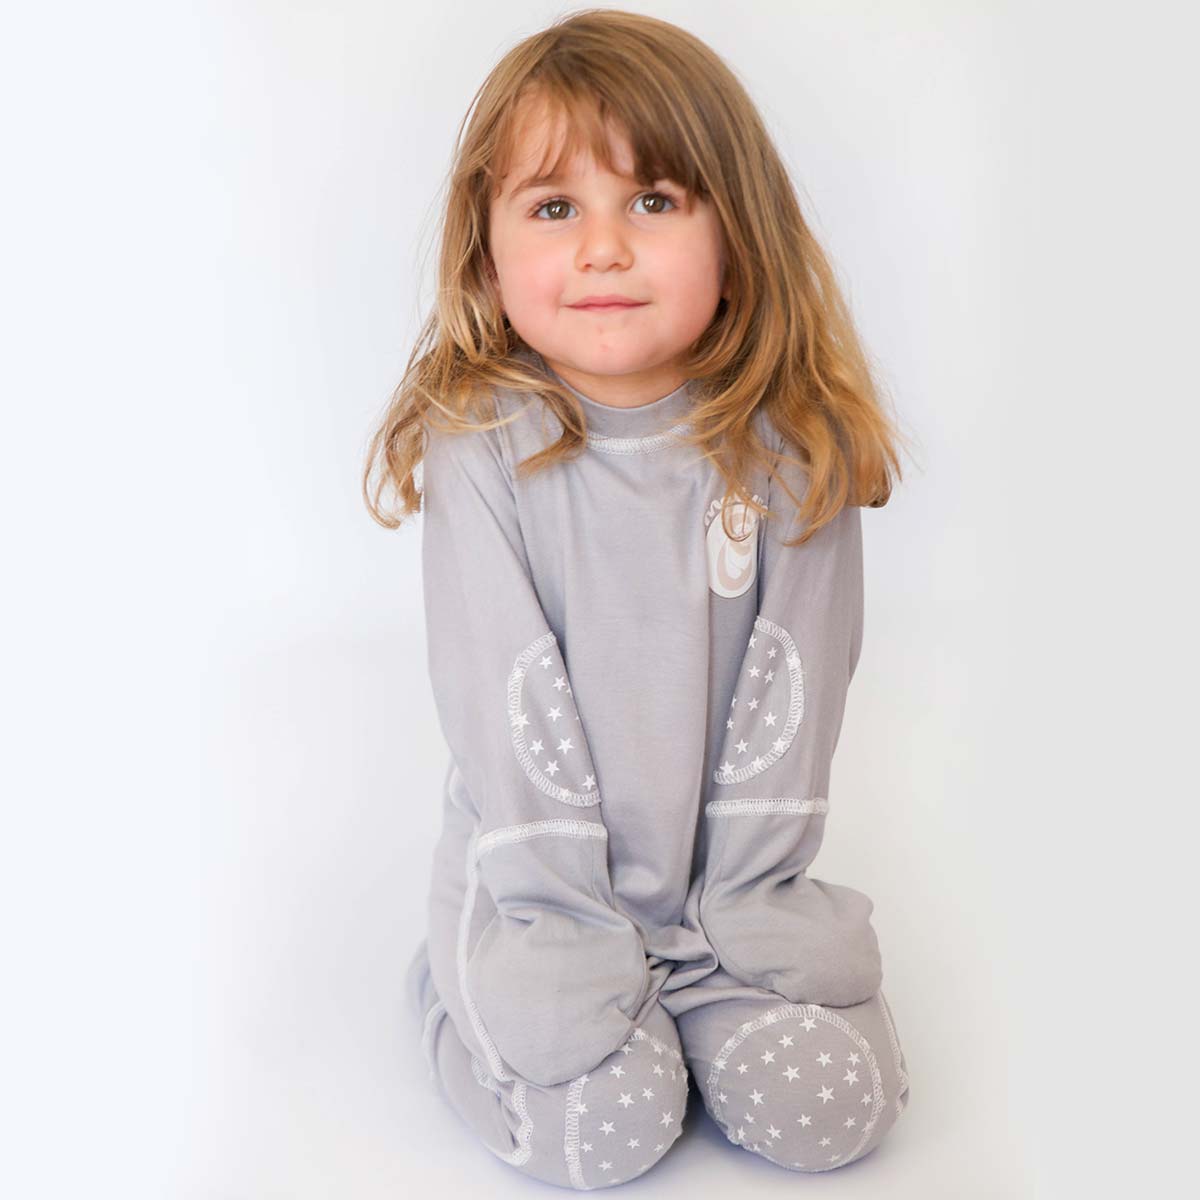 L'atelier d'Anaë - Le pyjama qui grandit avec bébé !